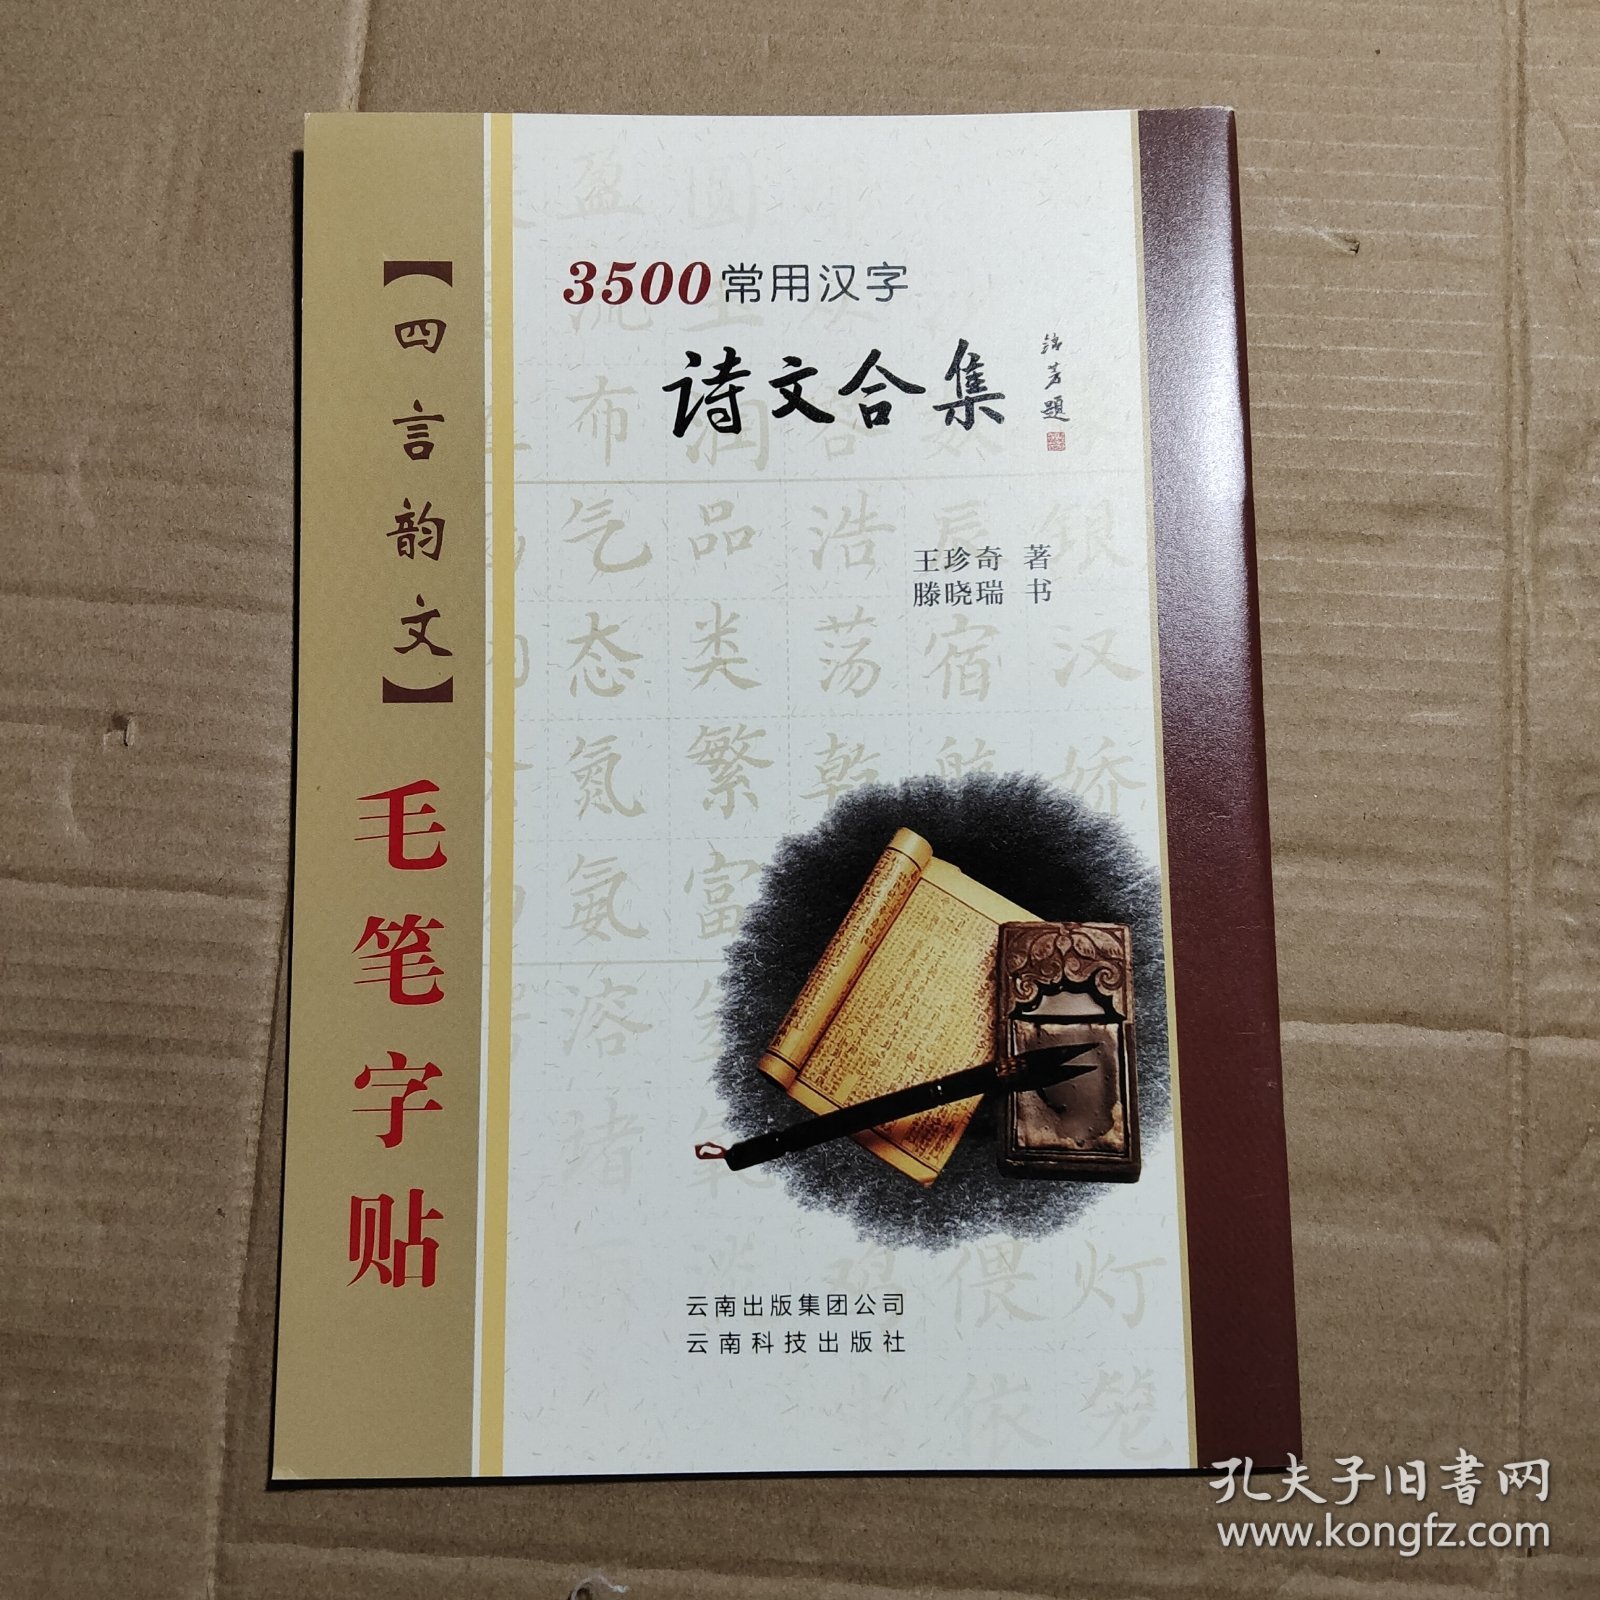 3500常用汉字诗文合集